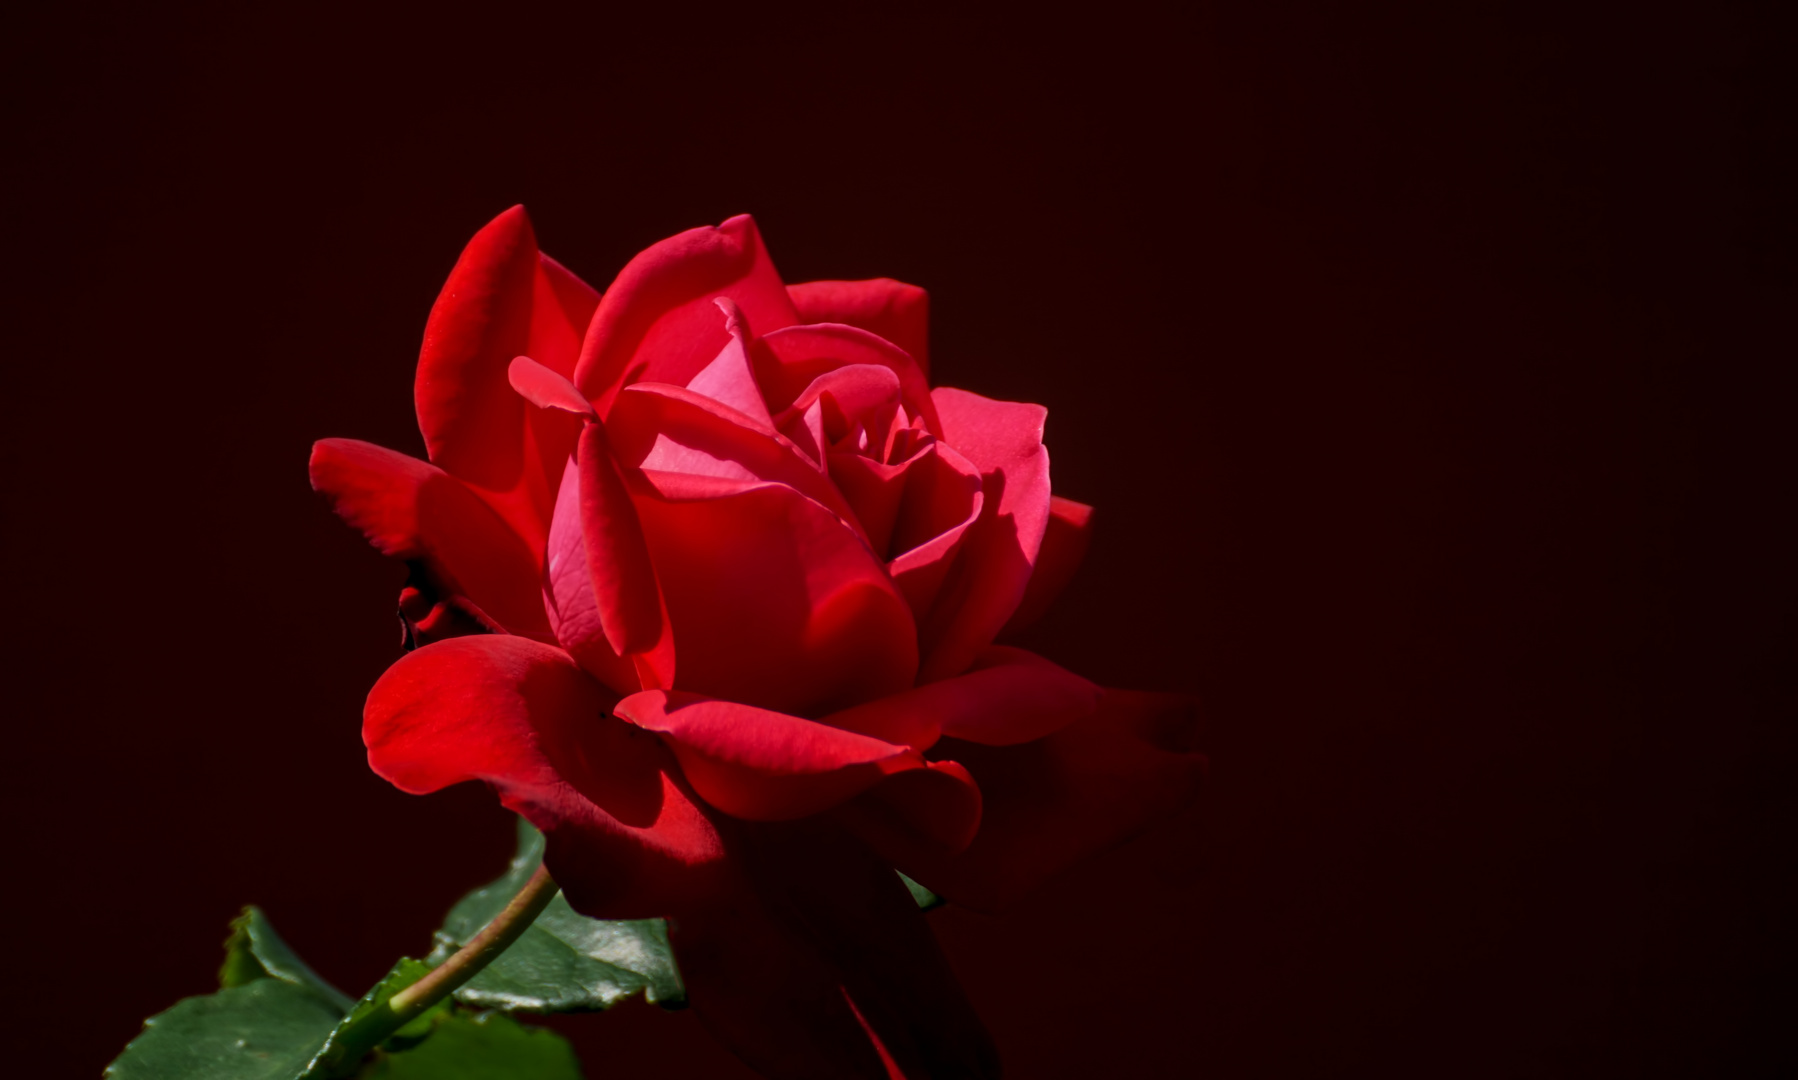 rote Rose 